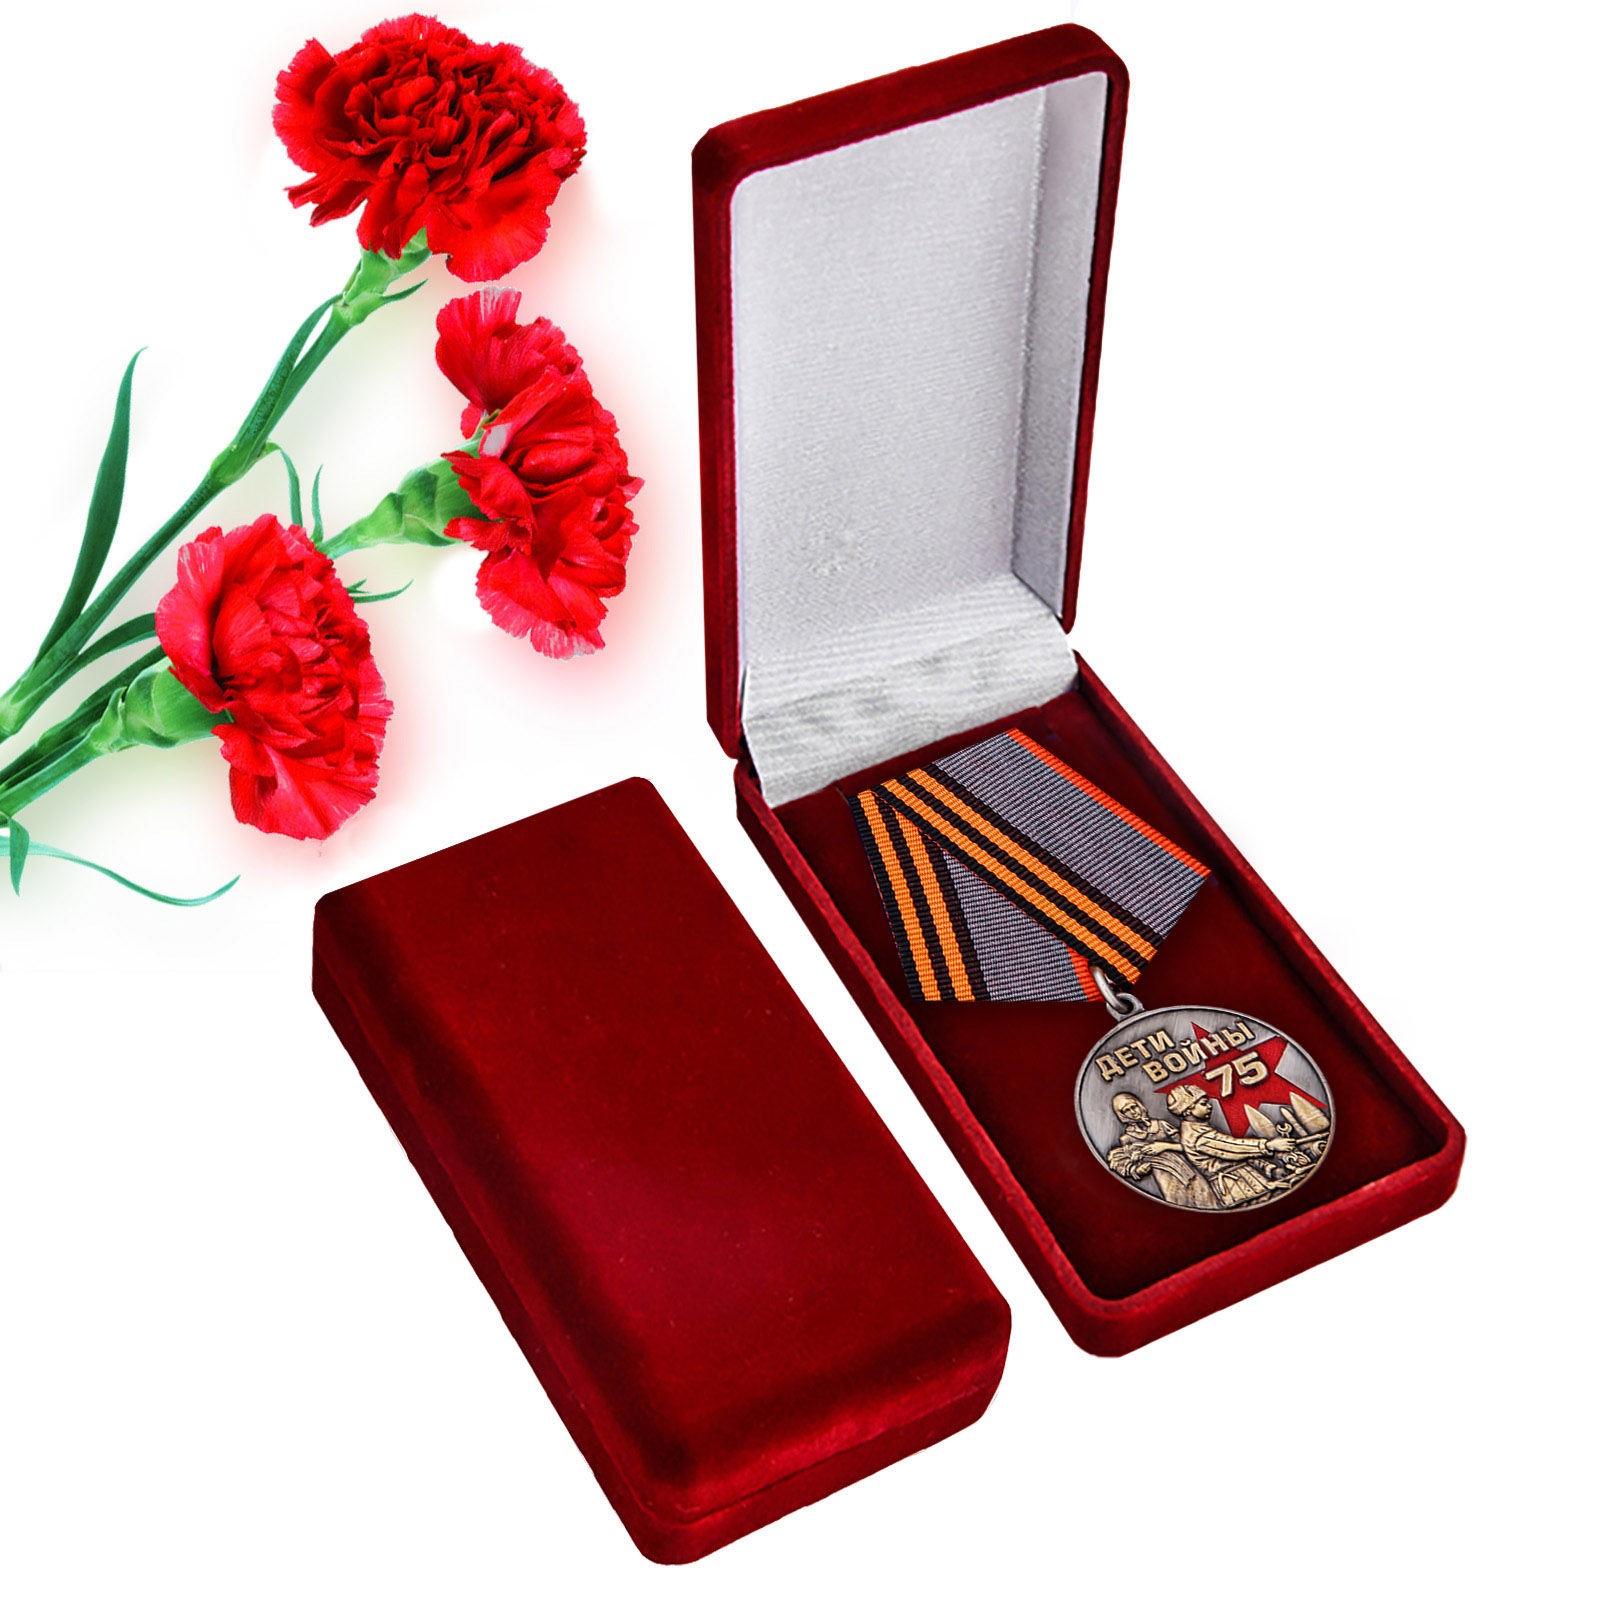 Купить памятную медаль "Дети войны" в футляре с доставкой в ваш город